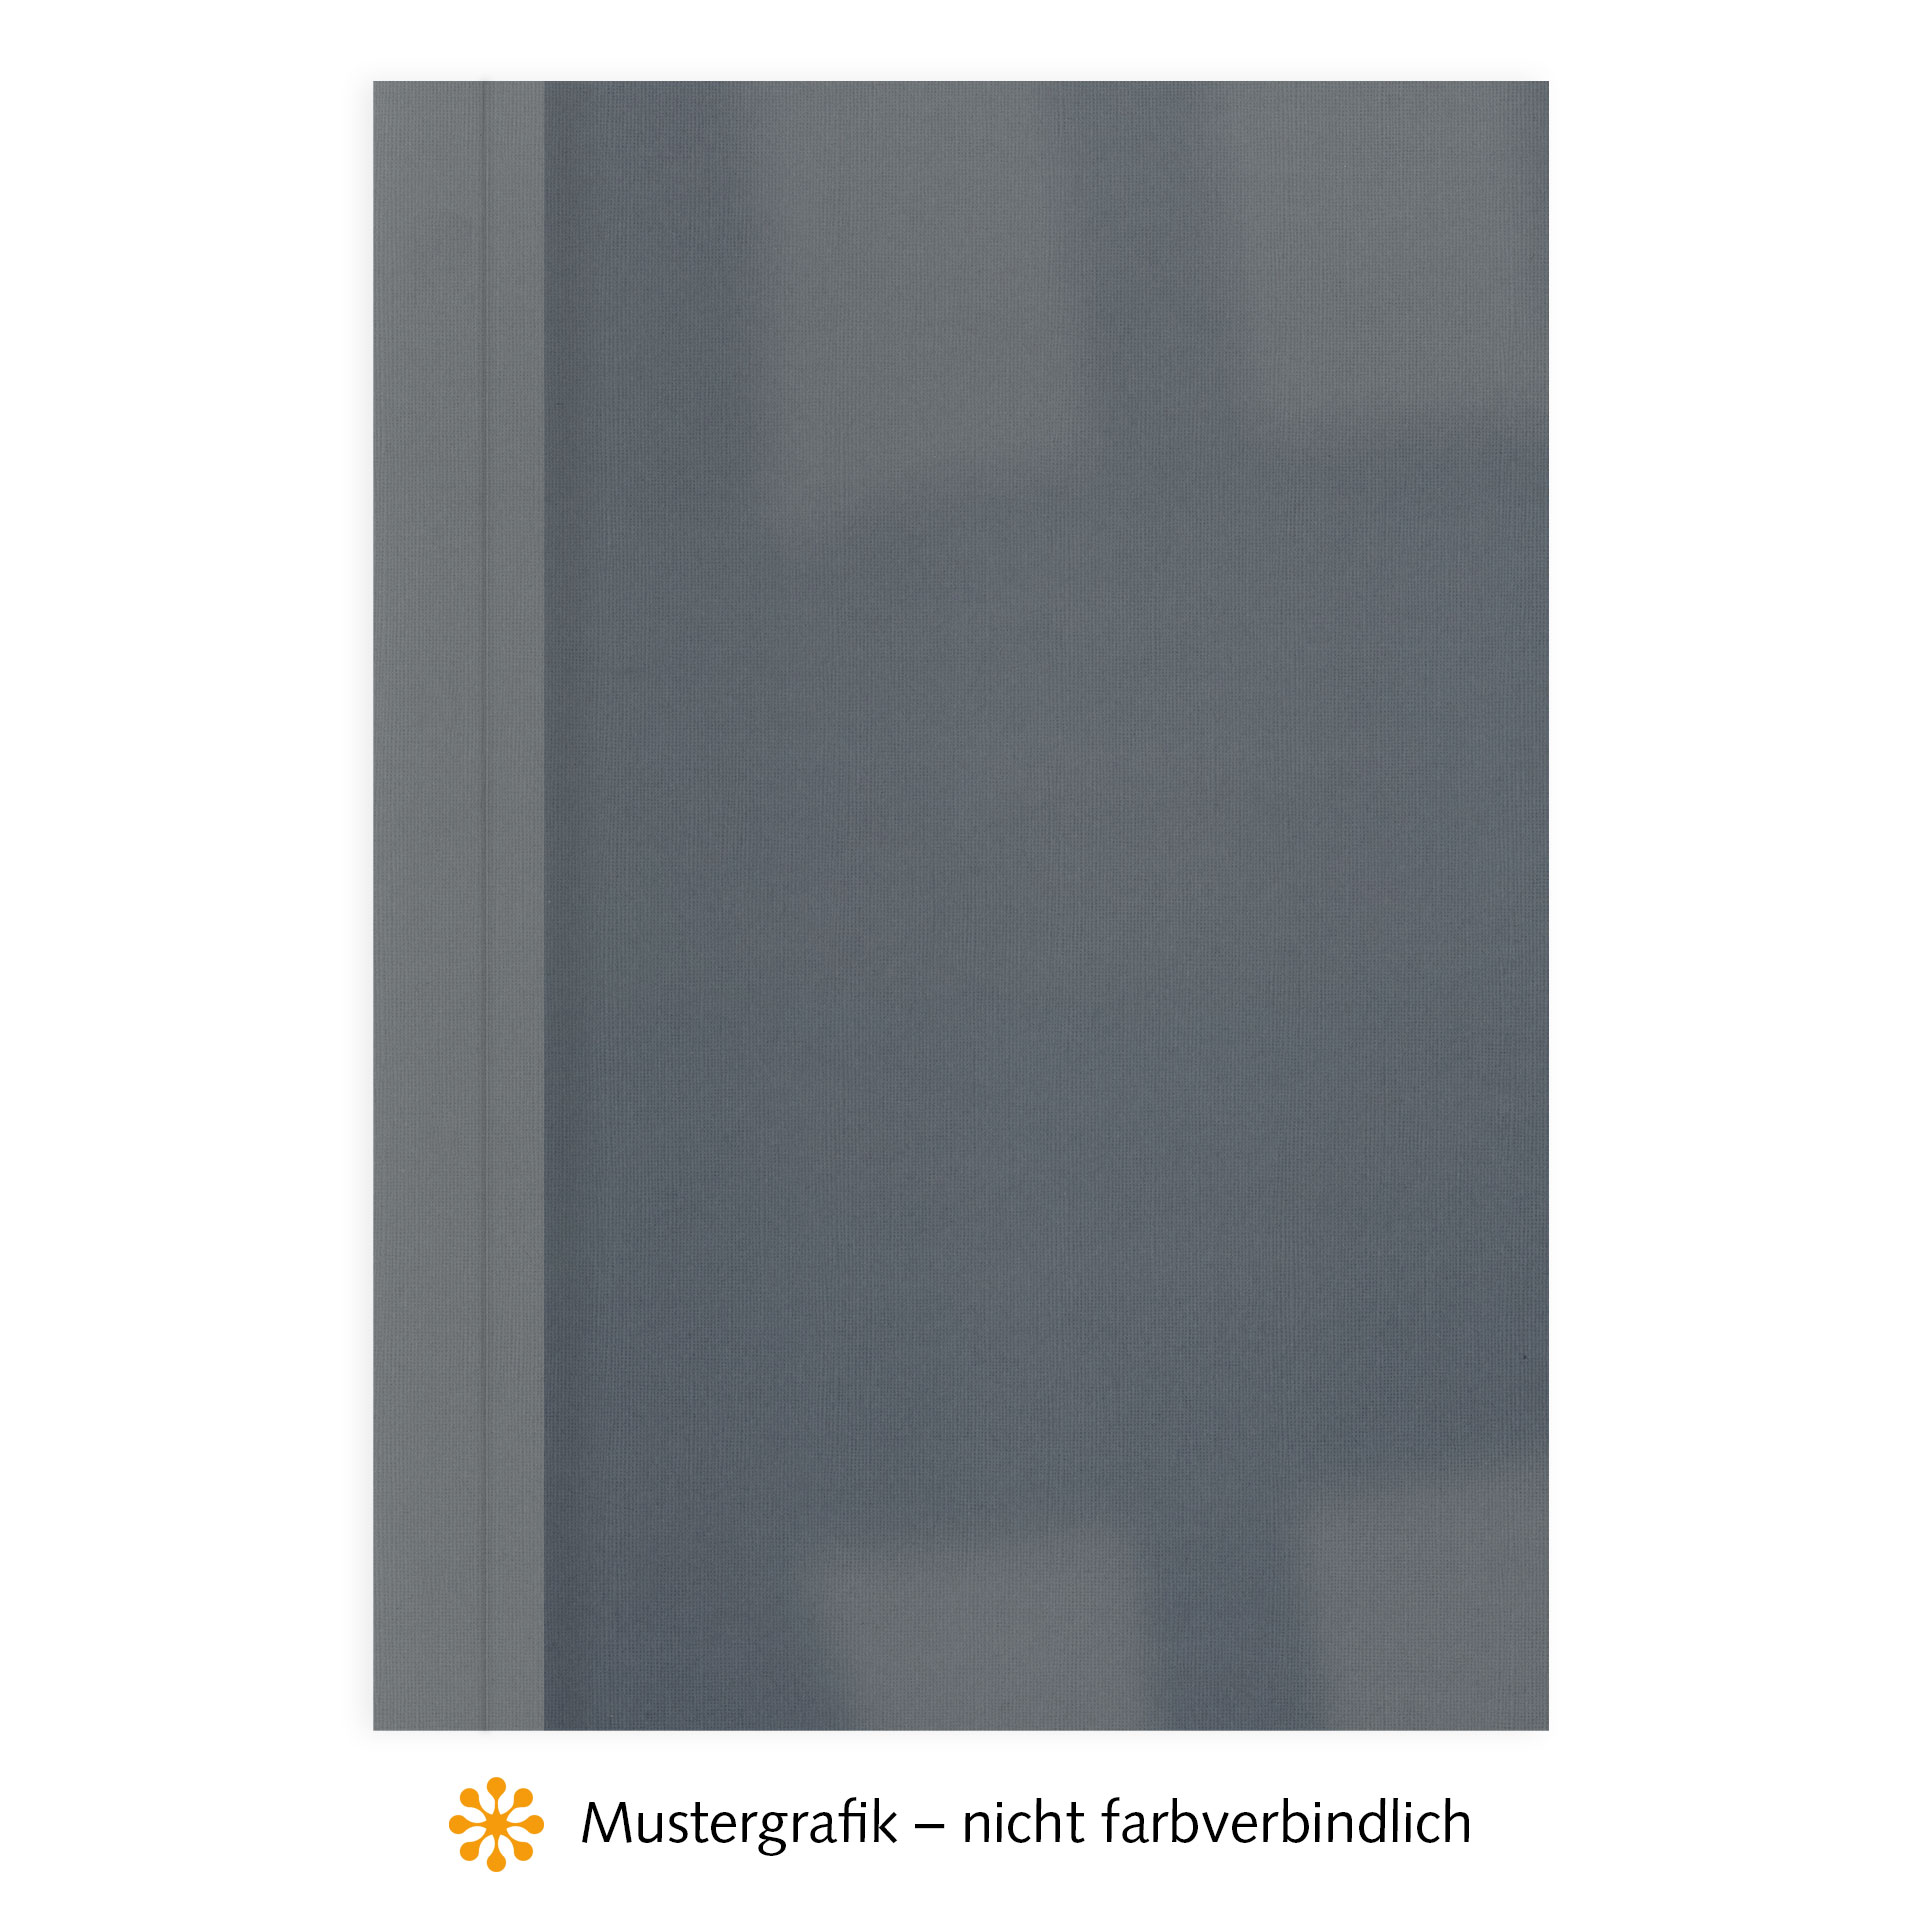 Ösenmappen DUO Cover, Vorderseite Folie KLAR transparent, Rückseite Karton Leinen, Dunkelgrau / Anthrazit, 5 mm, 41 bis 50 Blatt